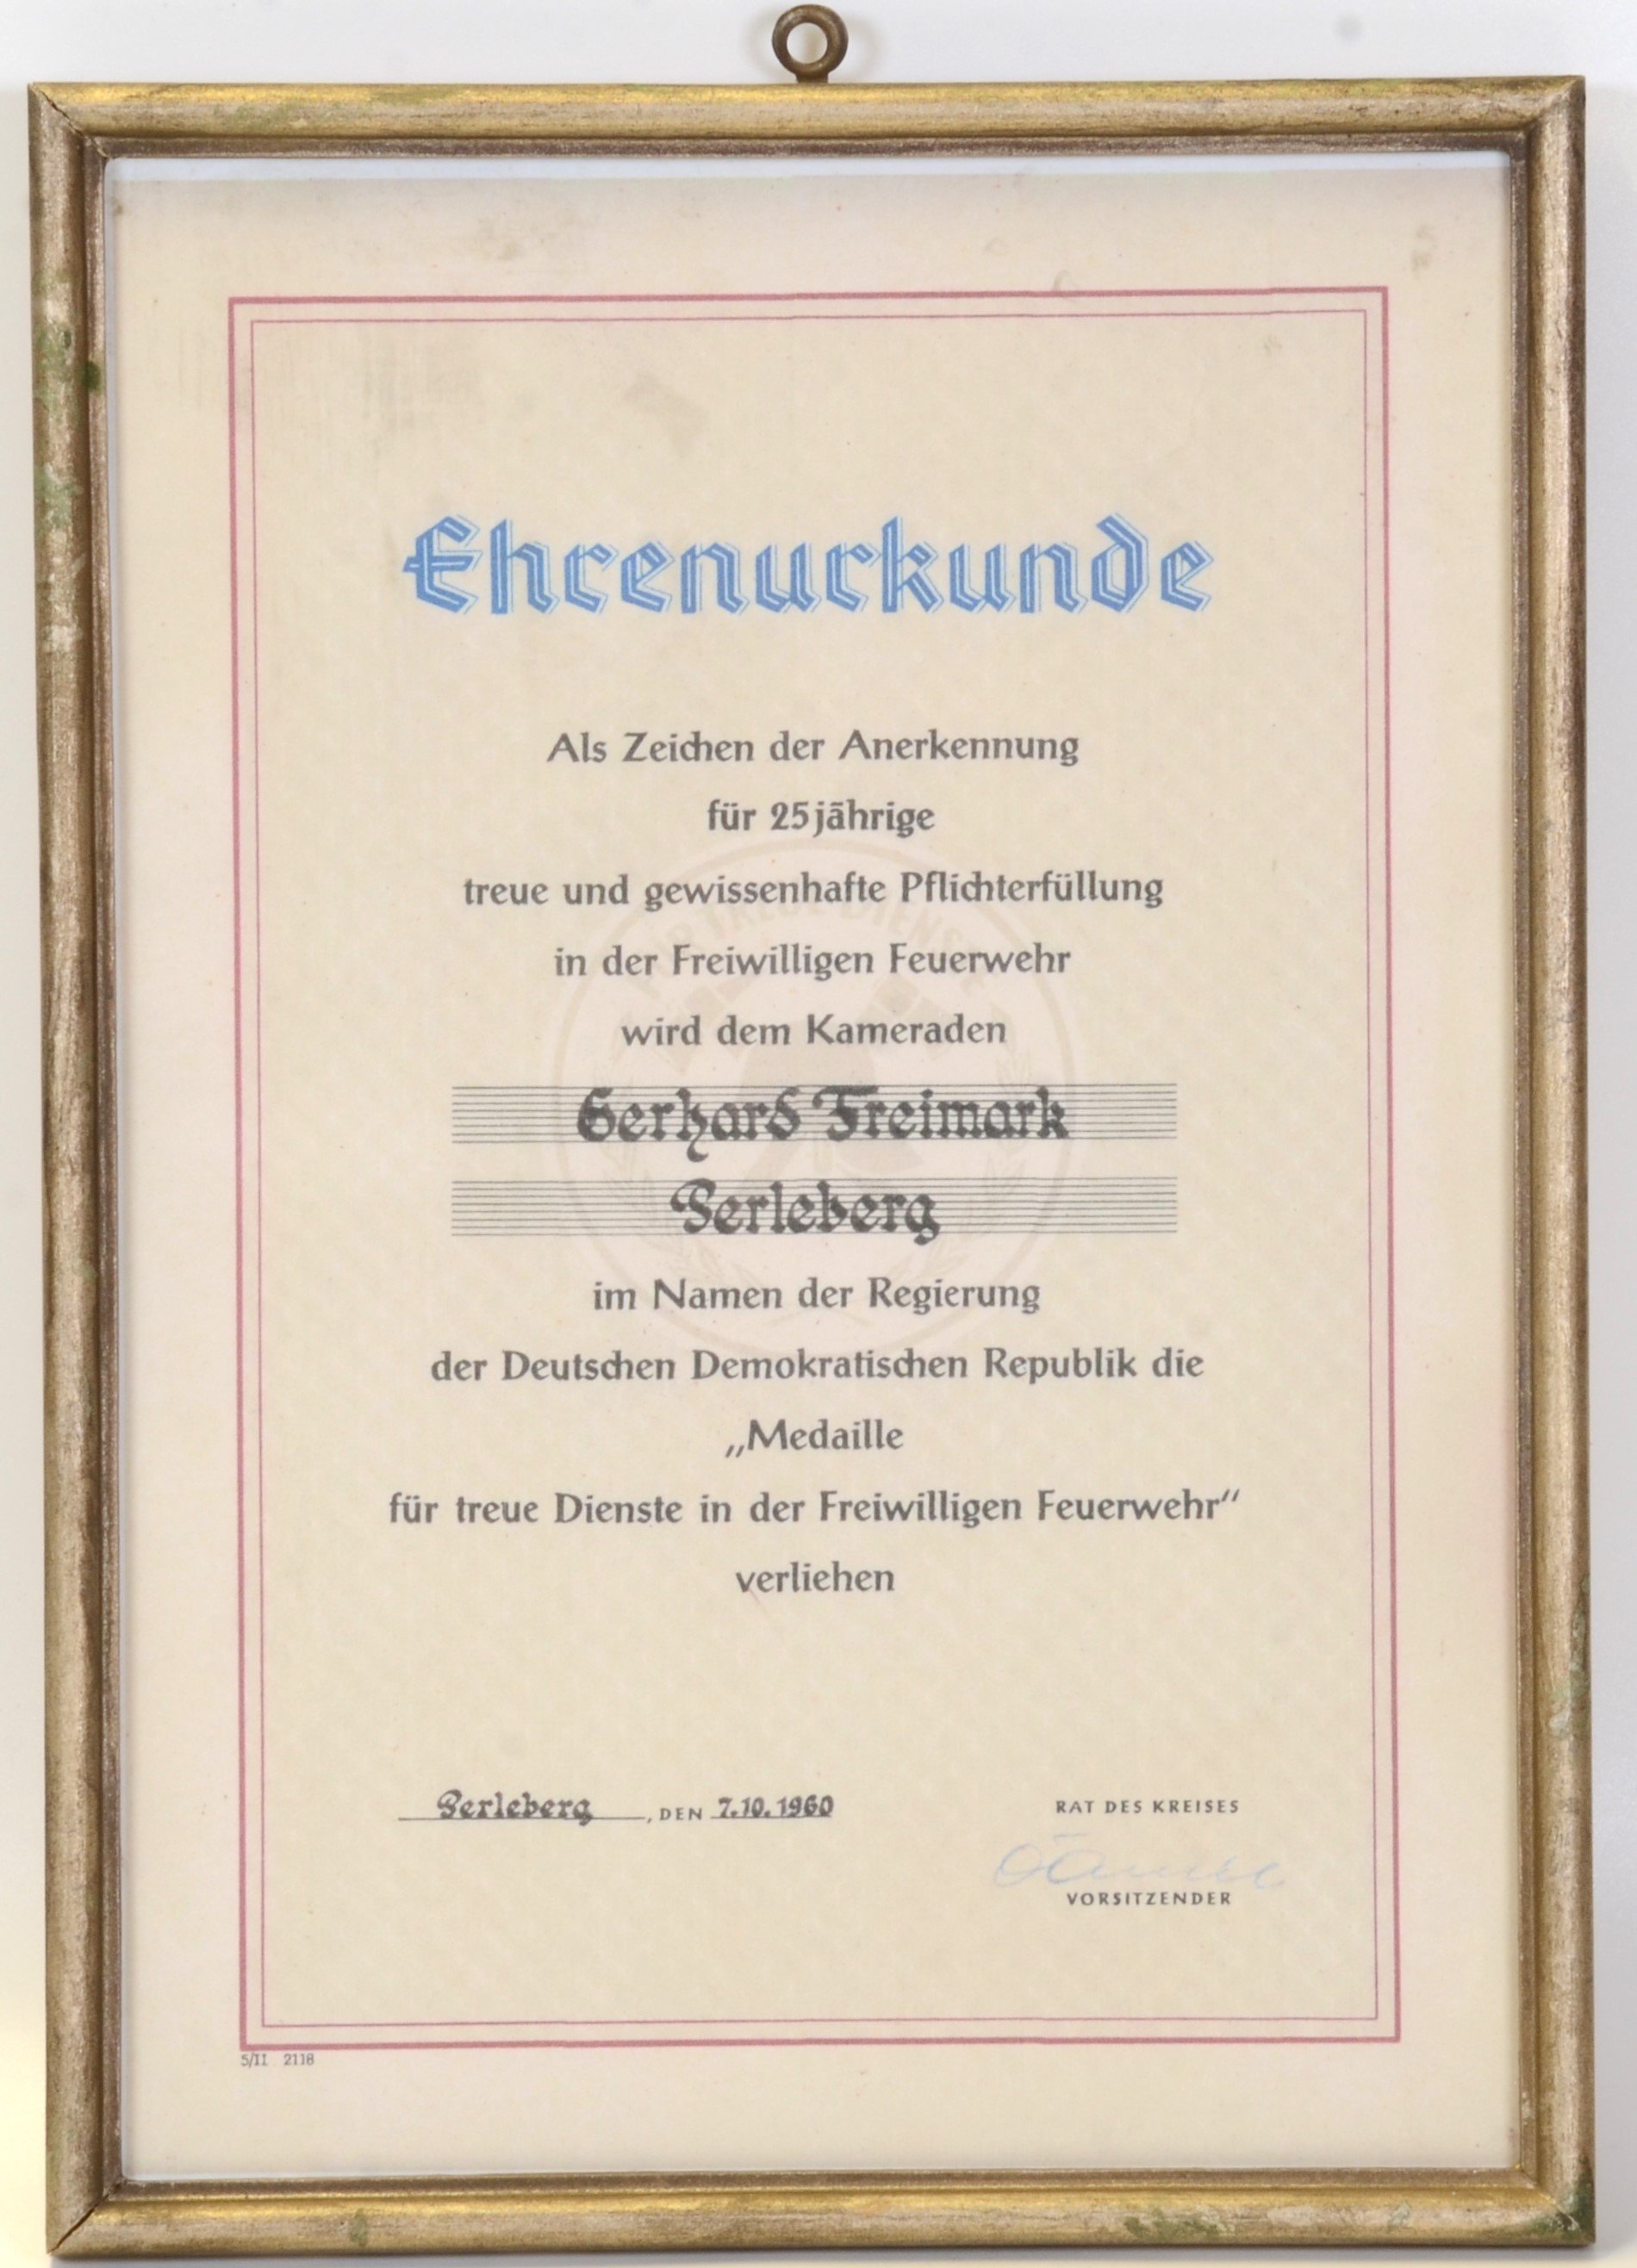 Ehrenurkunde der Freiwilligen Feuerwehr Perleberg für Gerhard Freimark (DDR Geschichtsmuseum im Dokumentationszentrum Perleberg CC BY-SA)